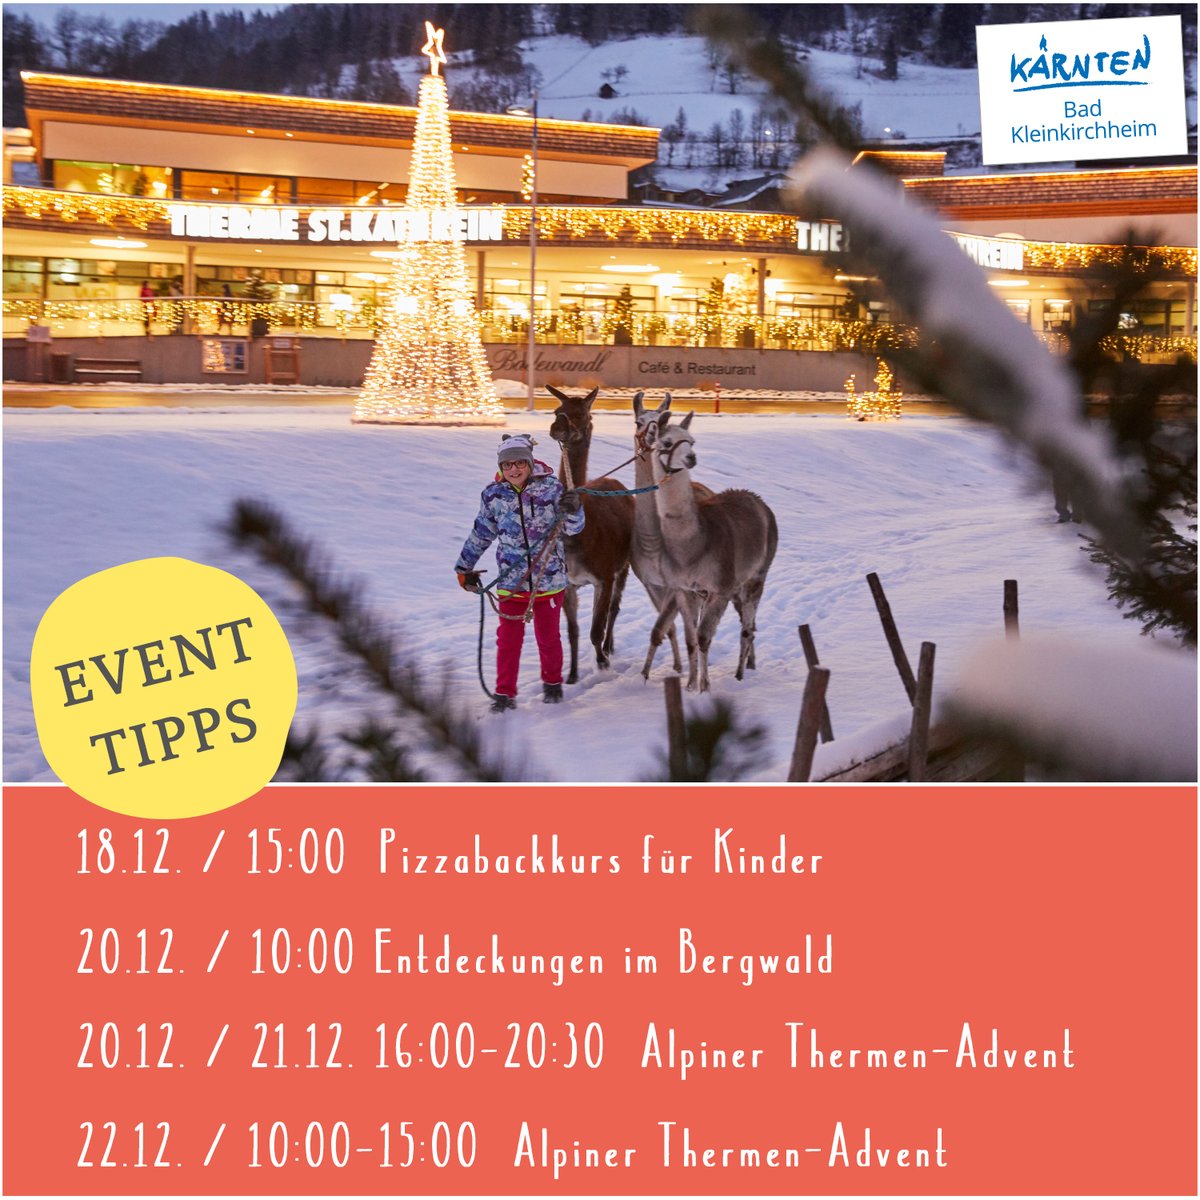 ✨ Unsere EVENT TIPPS für die kommende Woche in der Region #BadKleinkirchheim. Alle weiteren Veranstaltungen findet ihr hier: ➡️➡️ bit.ly/EventsBKK